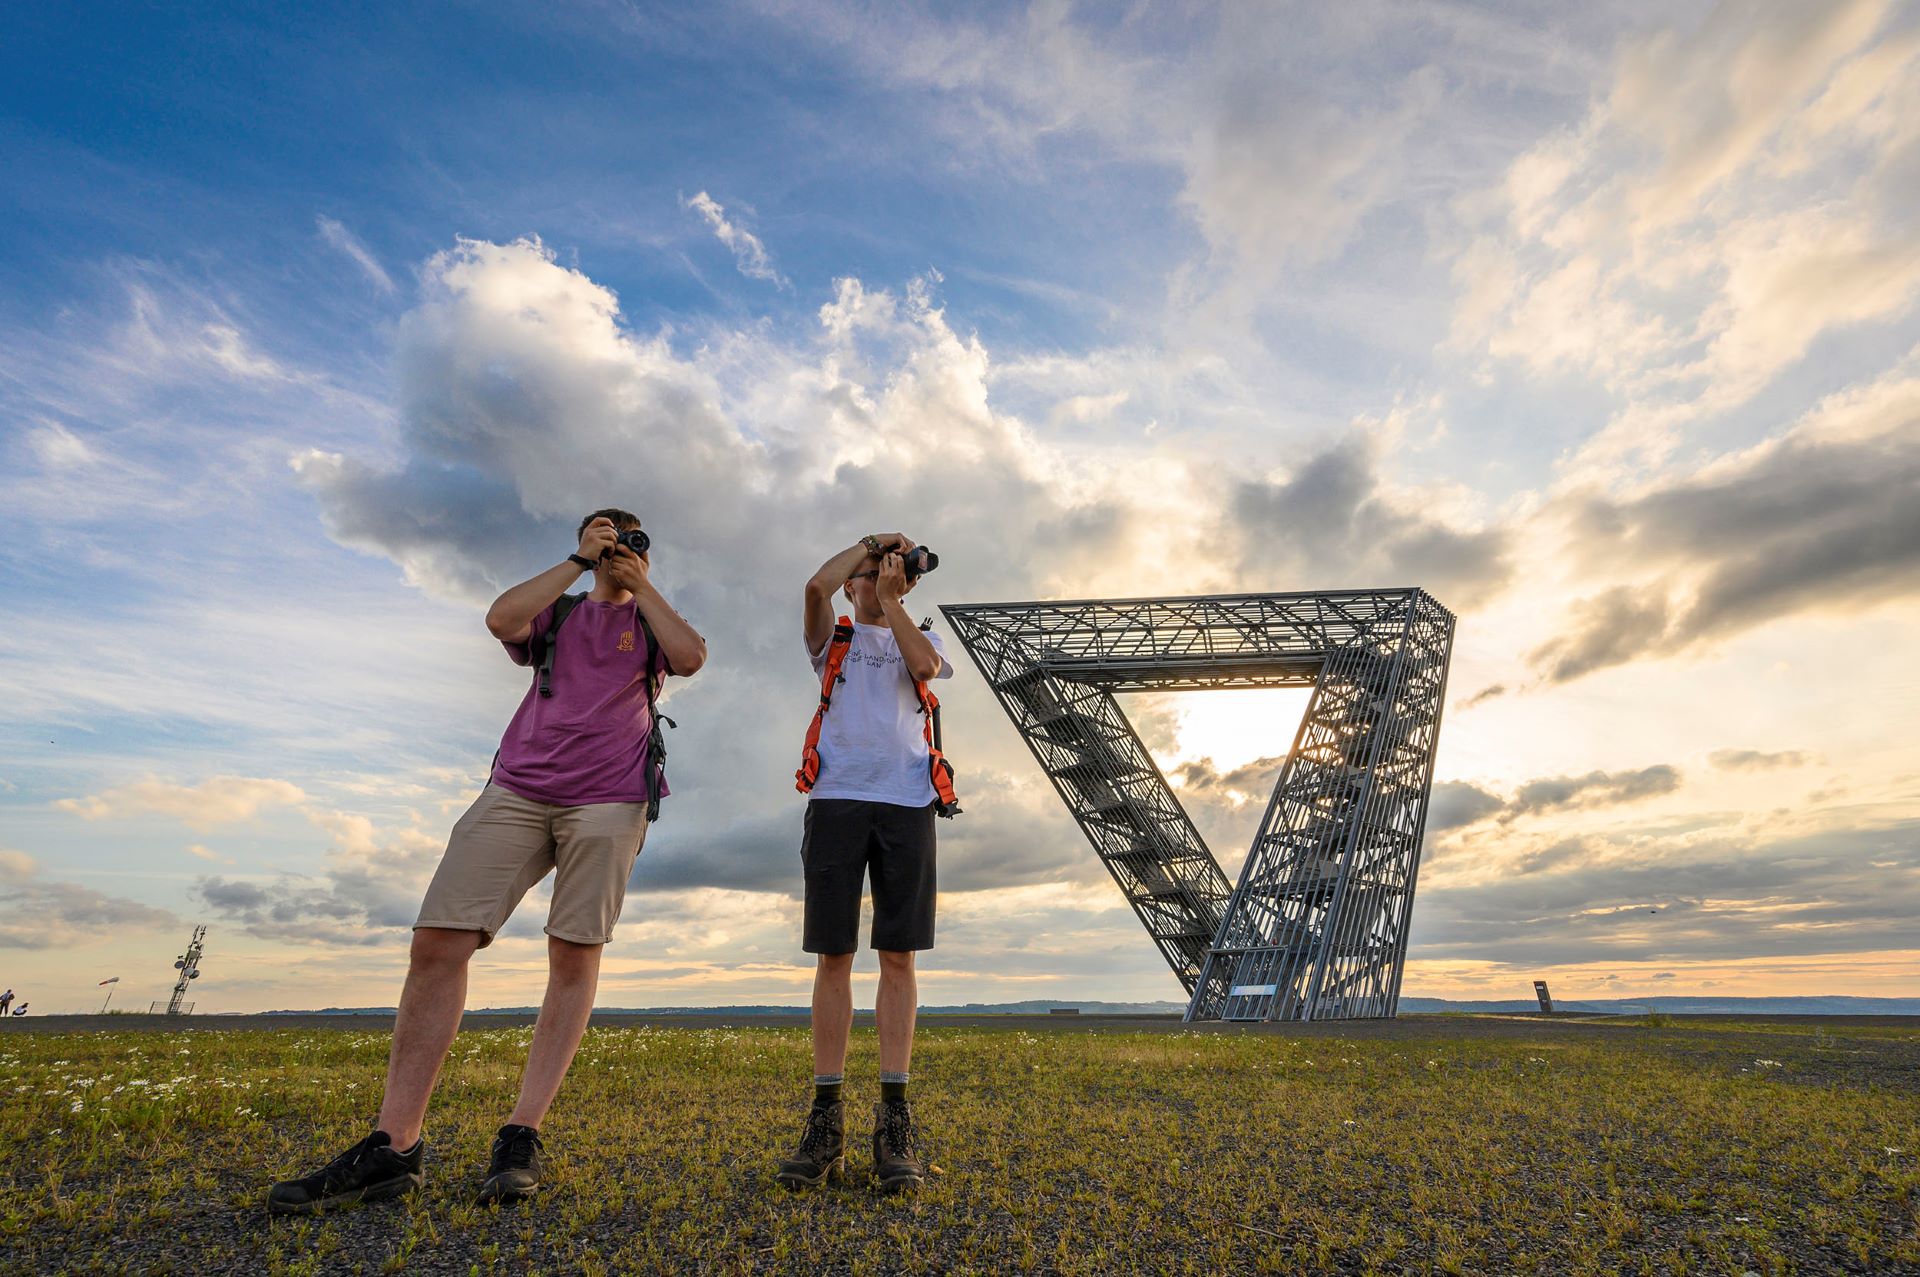 Zwei Mitglieder des Saarroamers Collective fotografieren die Aussicht von der Spitze des Saarpolygon-Hügels. Hinter ihnen ist das Saarpolygon gegen einen abendblauen Himmel mit Wolken zu sehen.